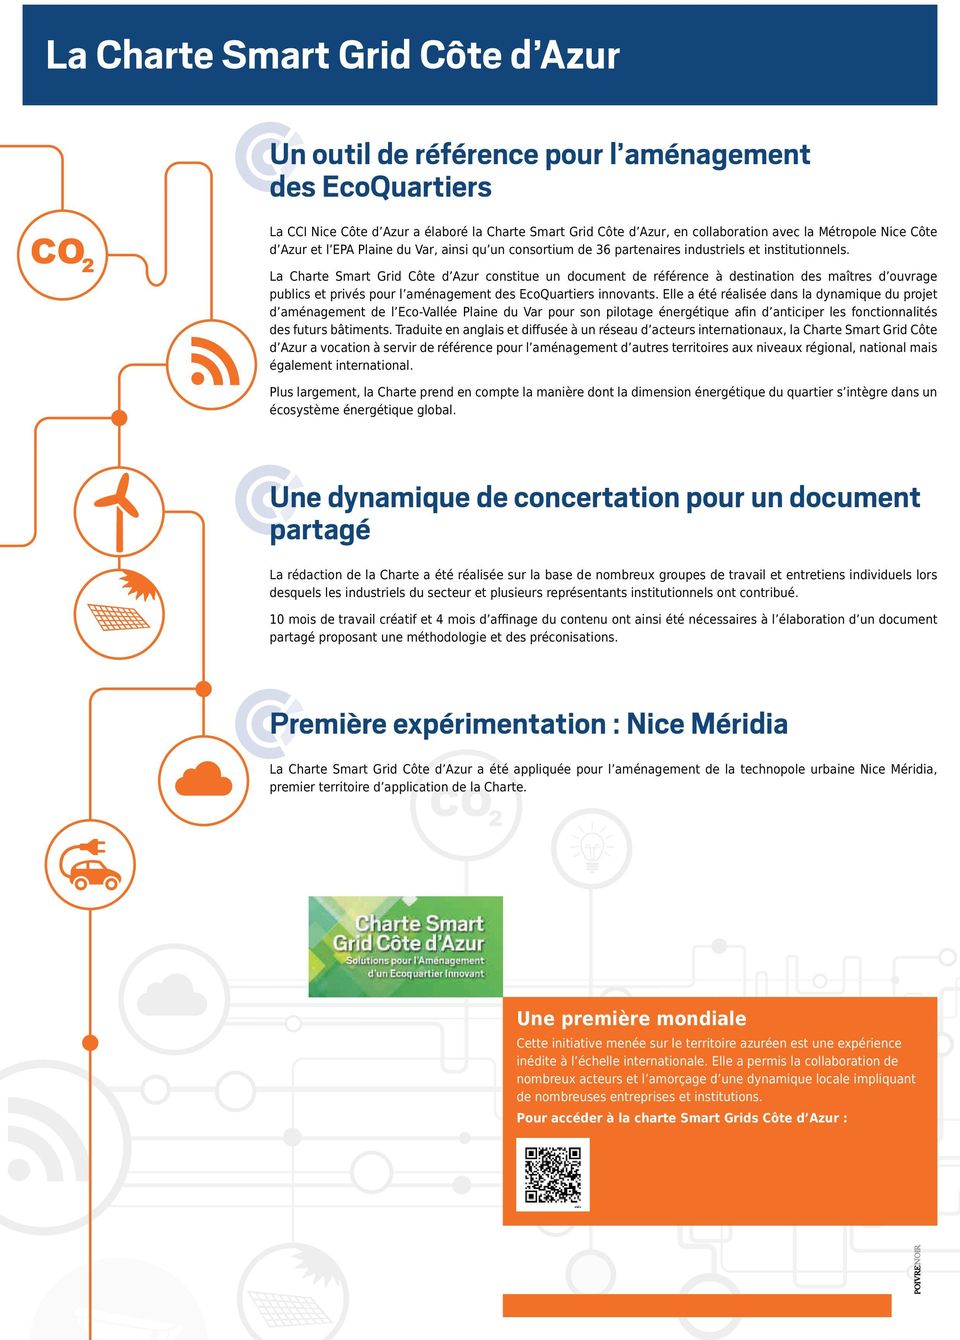 La Charte Smart Grid Côte d Azur constitue un document de référence à destination des maîtres d ouvrage publics et privés pour l aménagement des EcoQuartiers innovants.